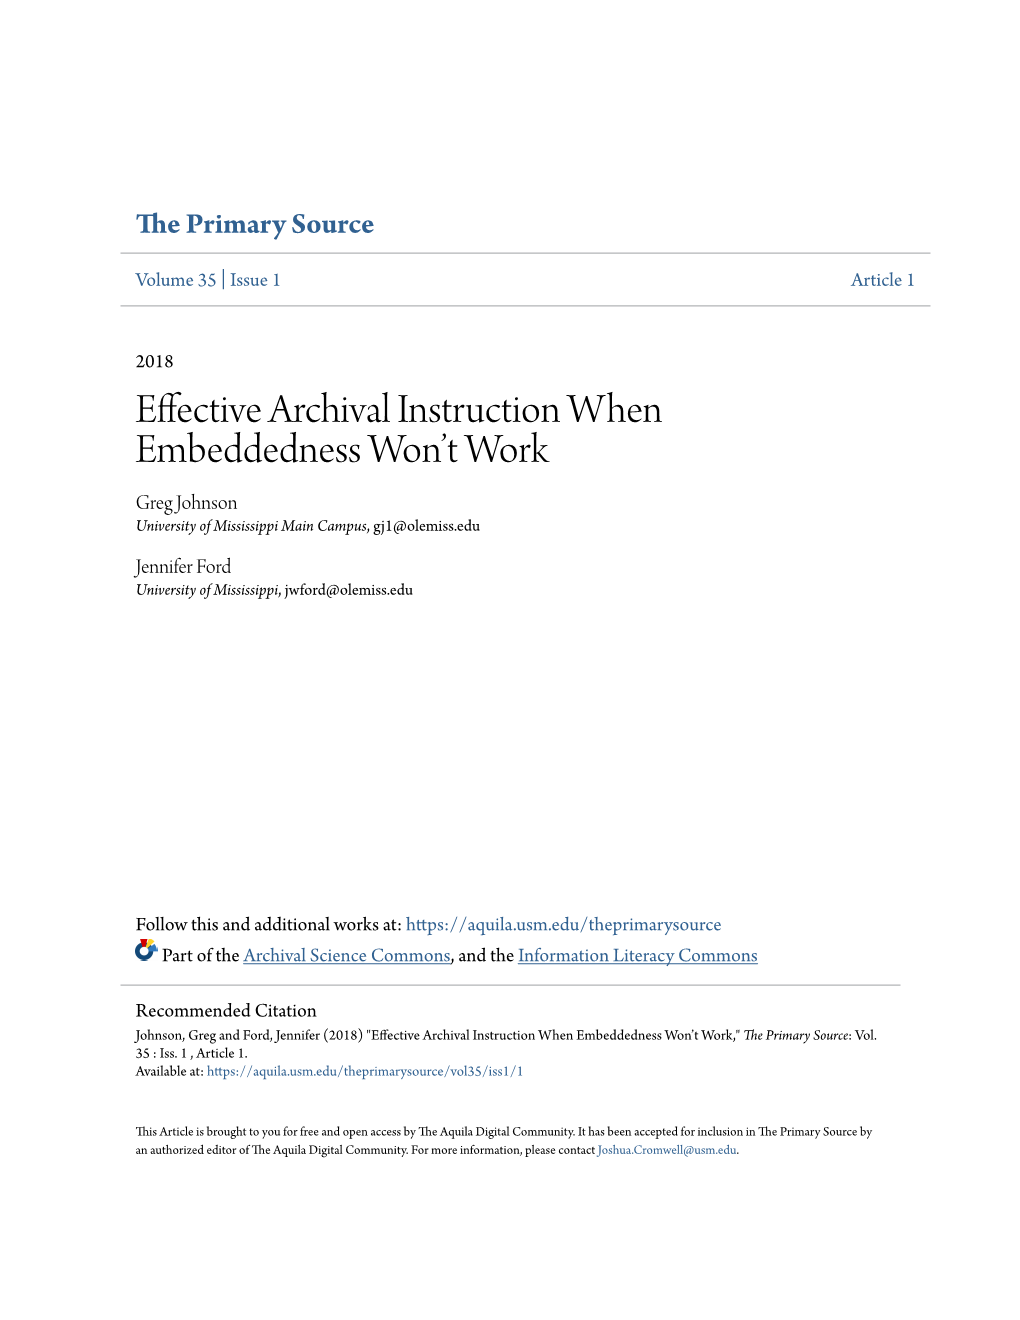 Effective Archival Instruction When Embeddedness Won't Work